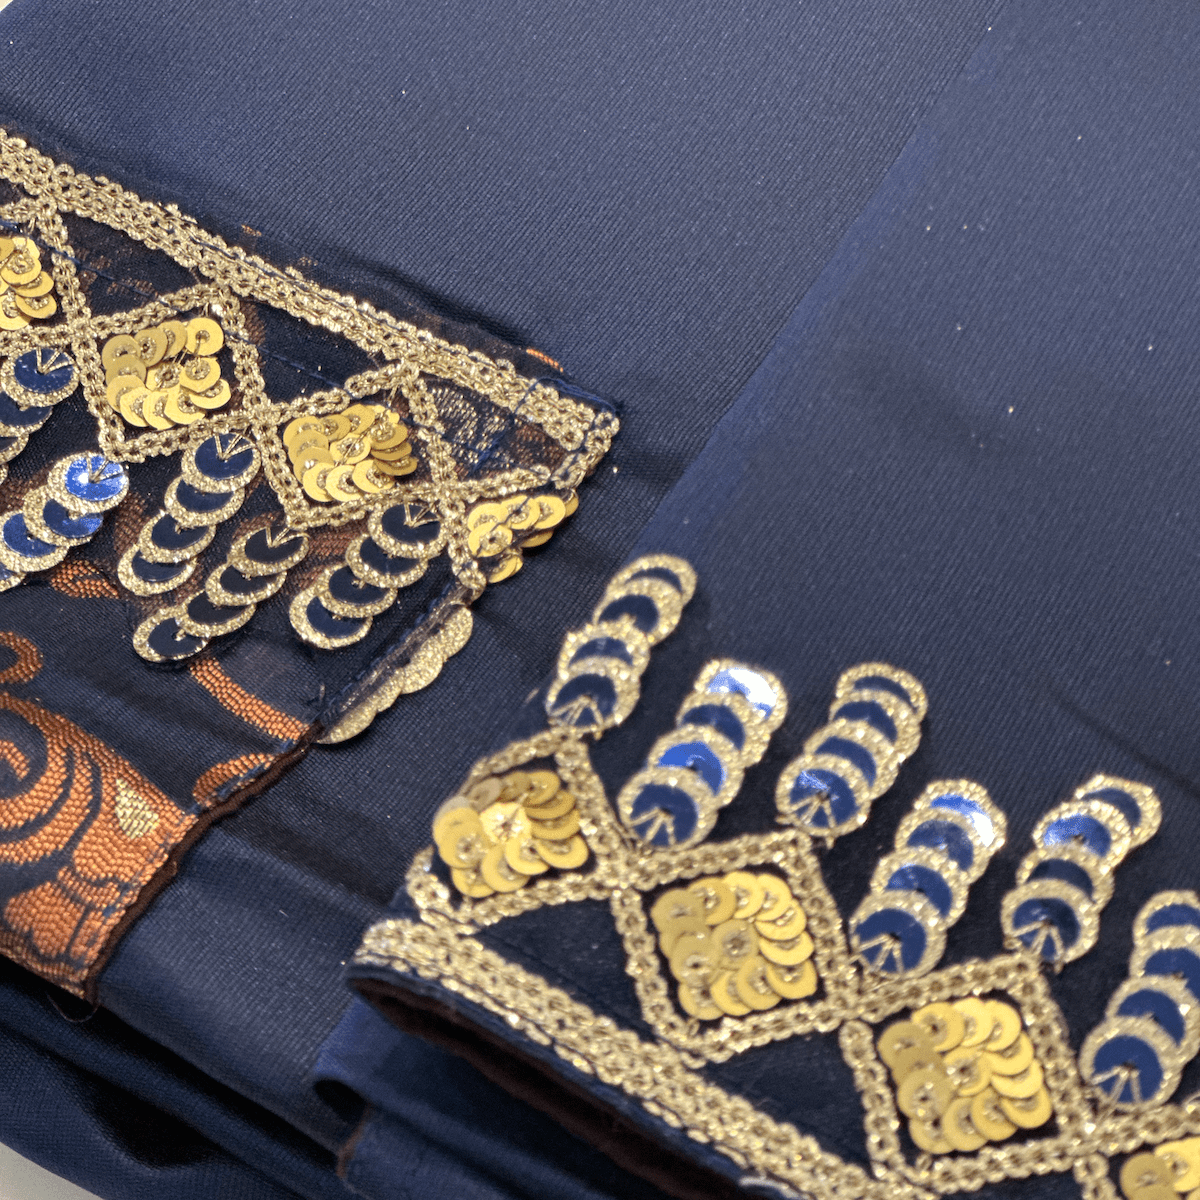 Cool &amp; Casual Handmade Sari Aprons-Dark Teal with Gold Trim 